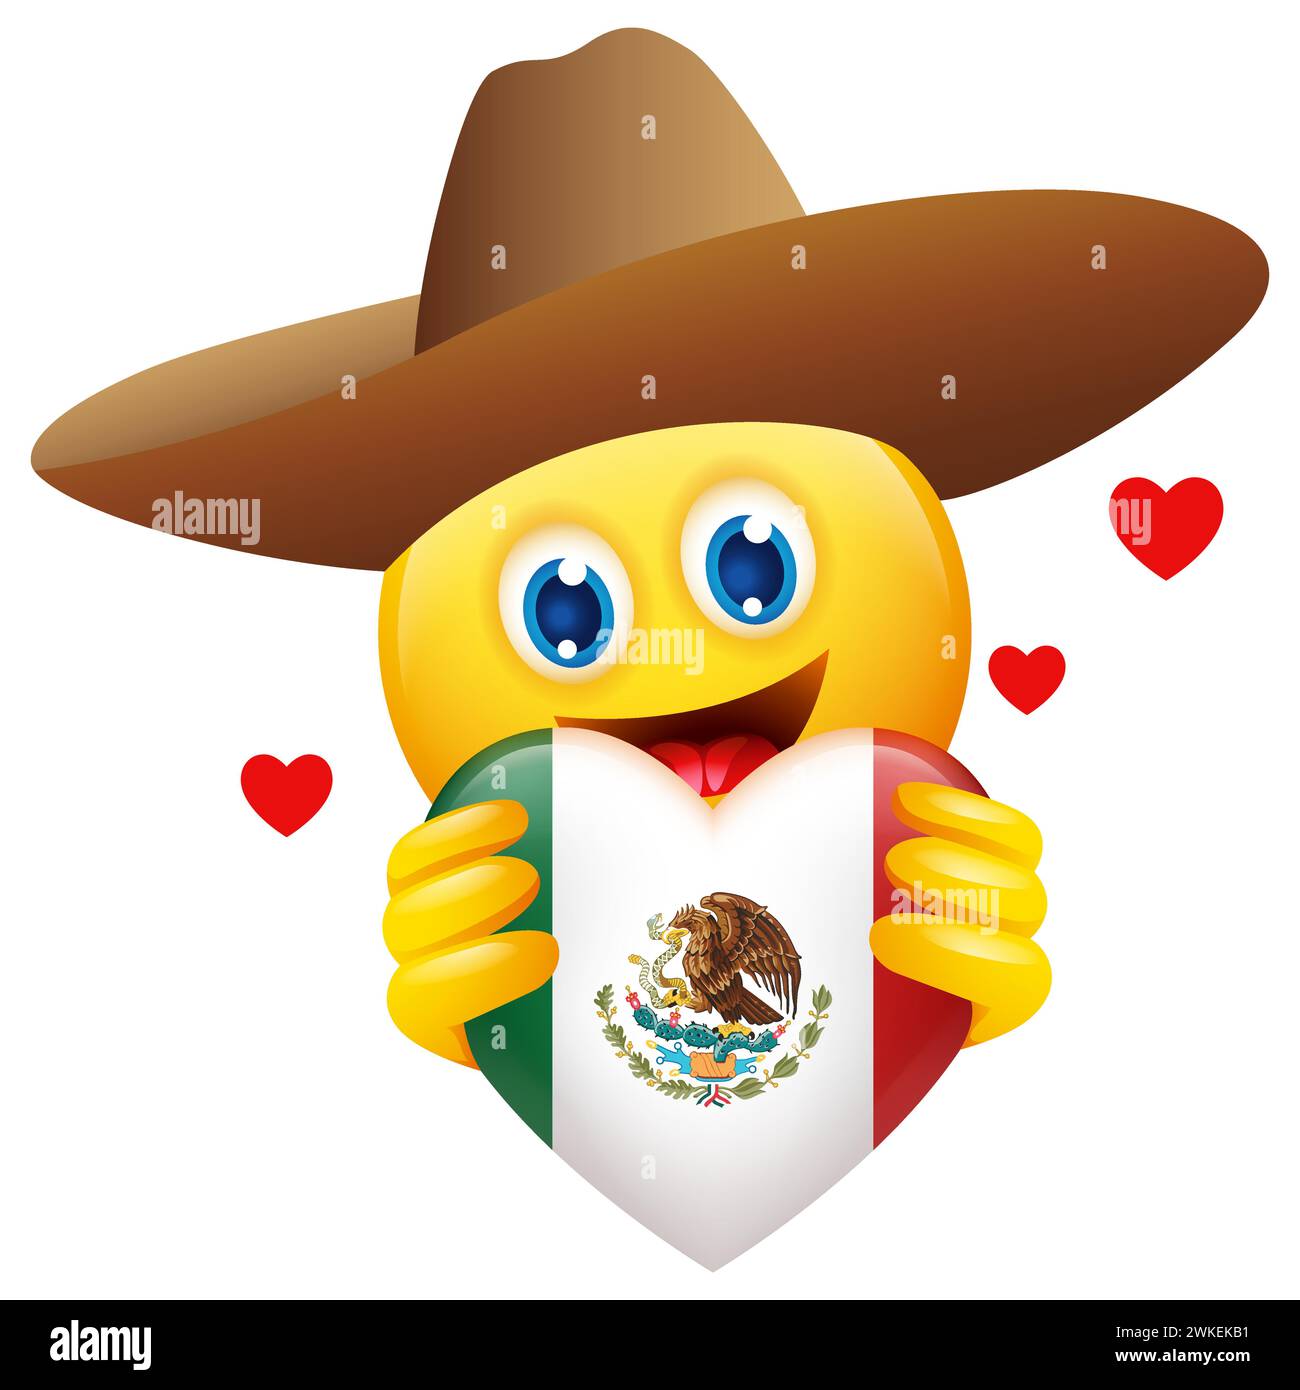 Illustrazione vettoriale di emoticon che indossa un cappello sombrero con il cuore simbolo dell'insegna messicana, un modo divertente per celebrare la cultura messicana, l'orgoglio nazionale, Illustrazione Vettoriale